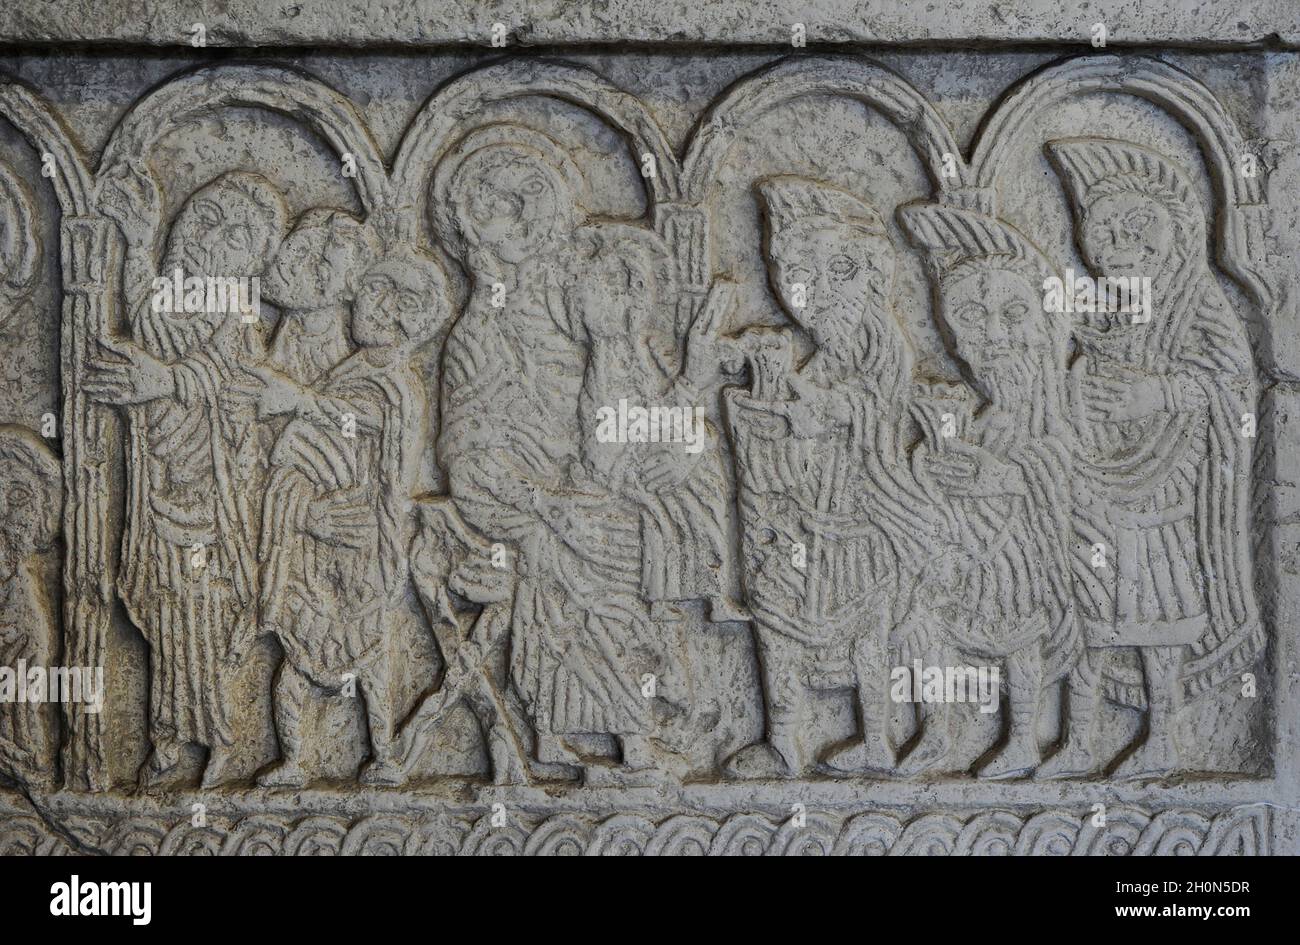 Dalles d'écran de l'église Saint-Nediljica à Zadar, XIe siècle (copie).Croatie.Détails.Marie, assise sur une chaise pliante, ayant Jésus sur son kne Banque D'Images